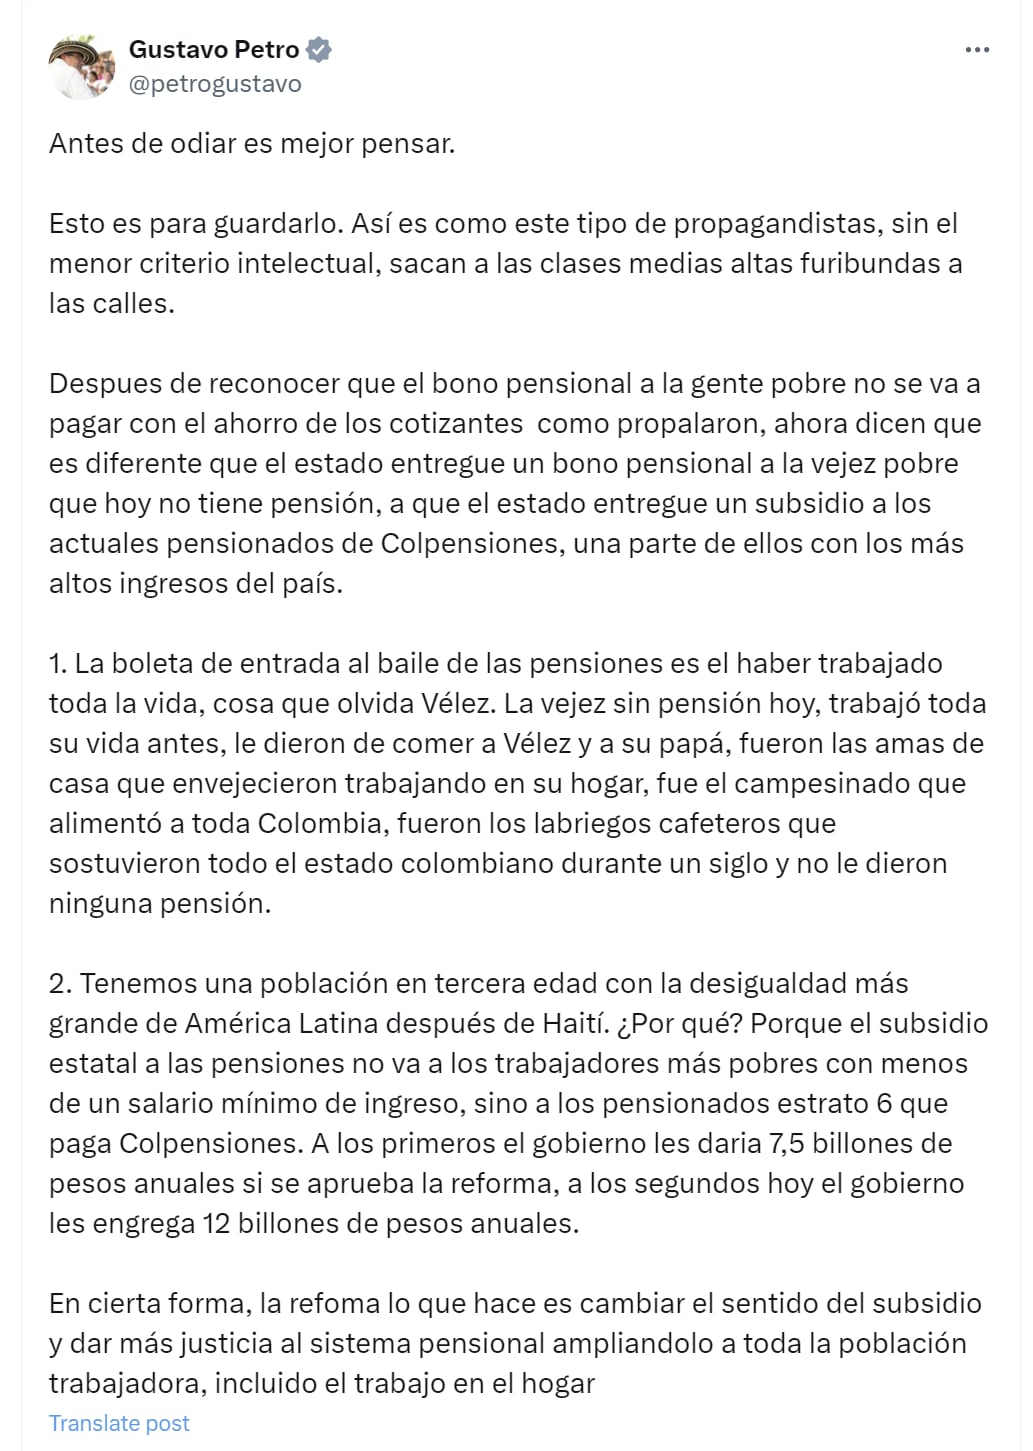 Gustavo Petro respondió críticas de Luis Carlos Vélez referentes a la reforma pensional - crédito @petrogustavo7X